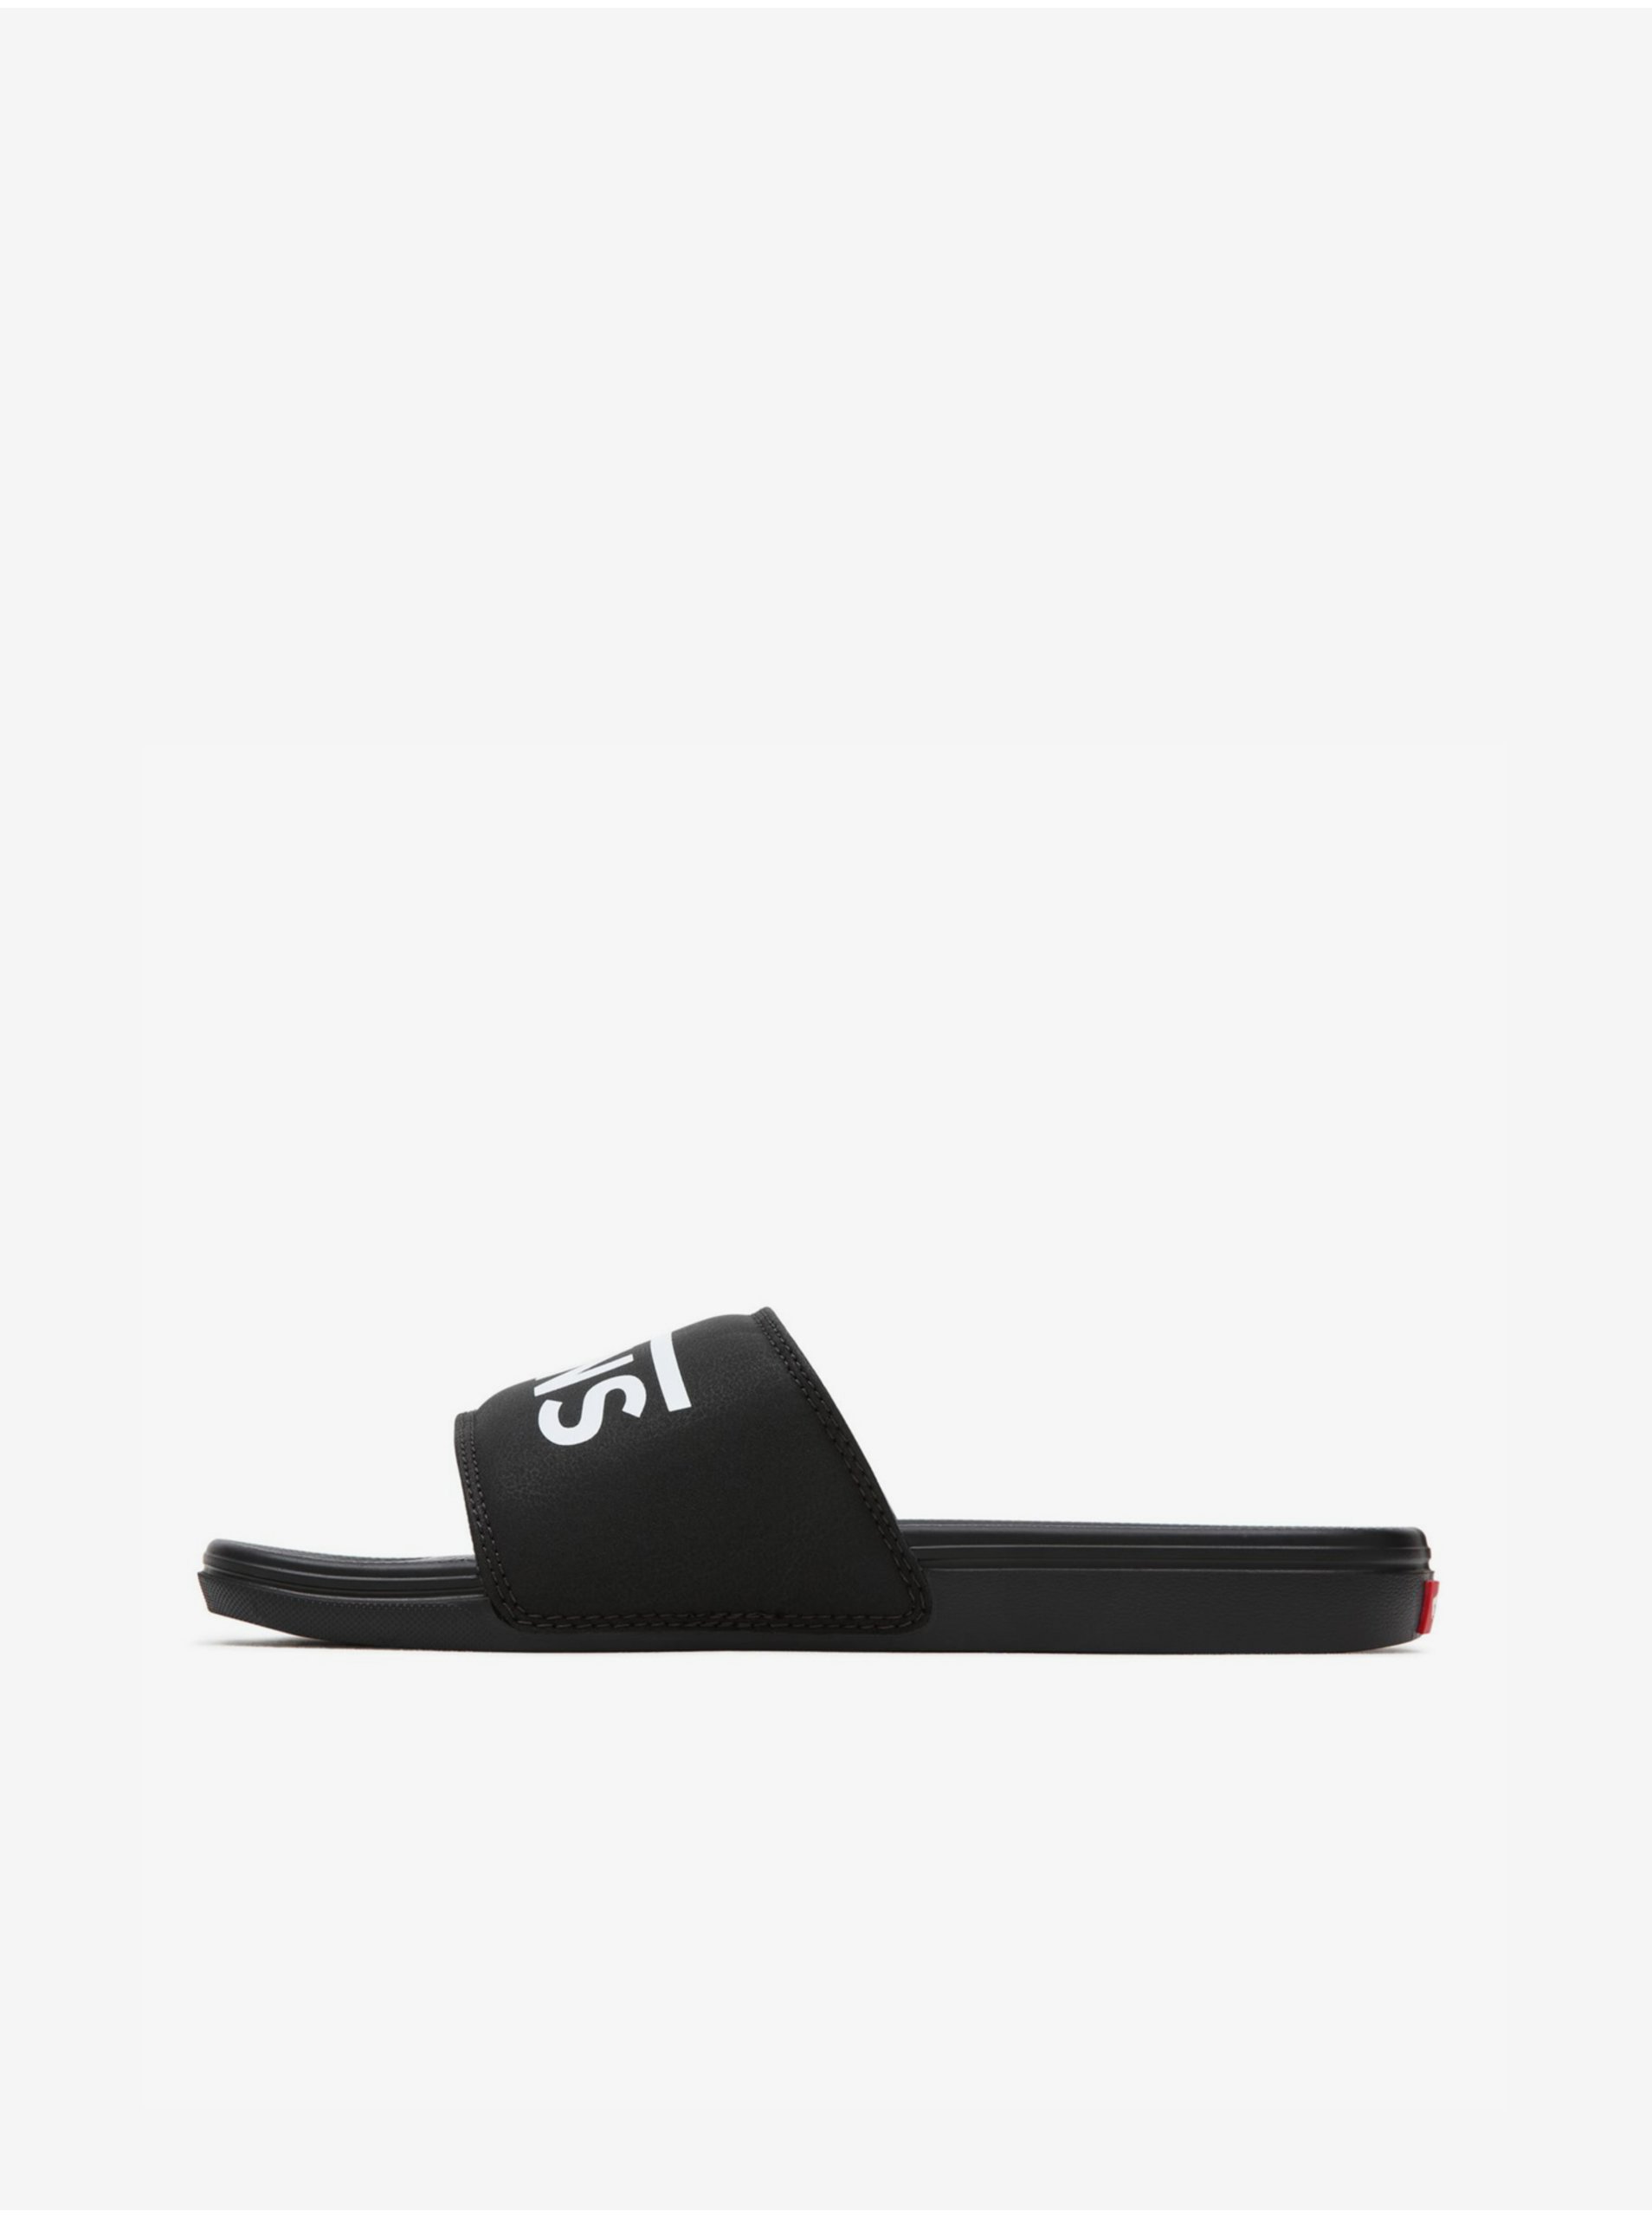 E-shop Černé pantofle s nápisem VANS La Costa